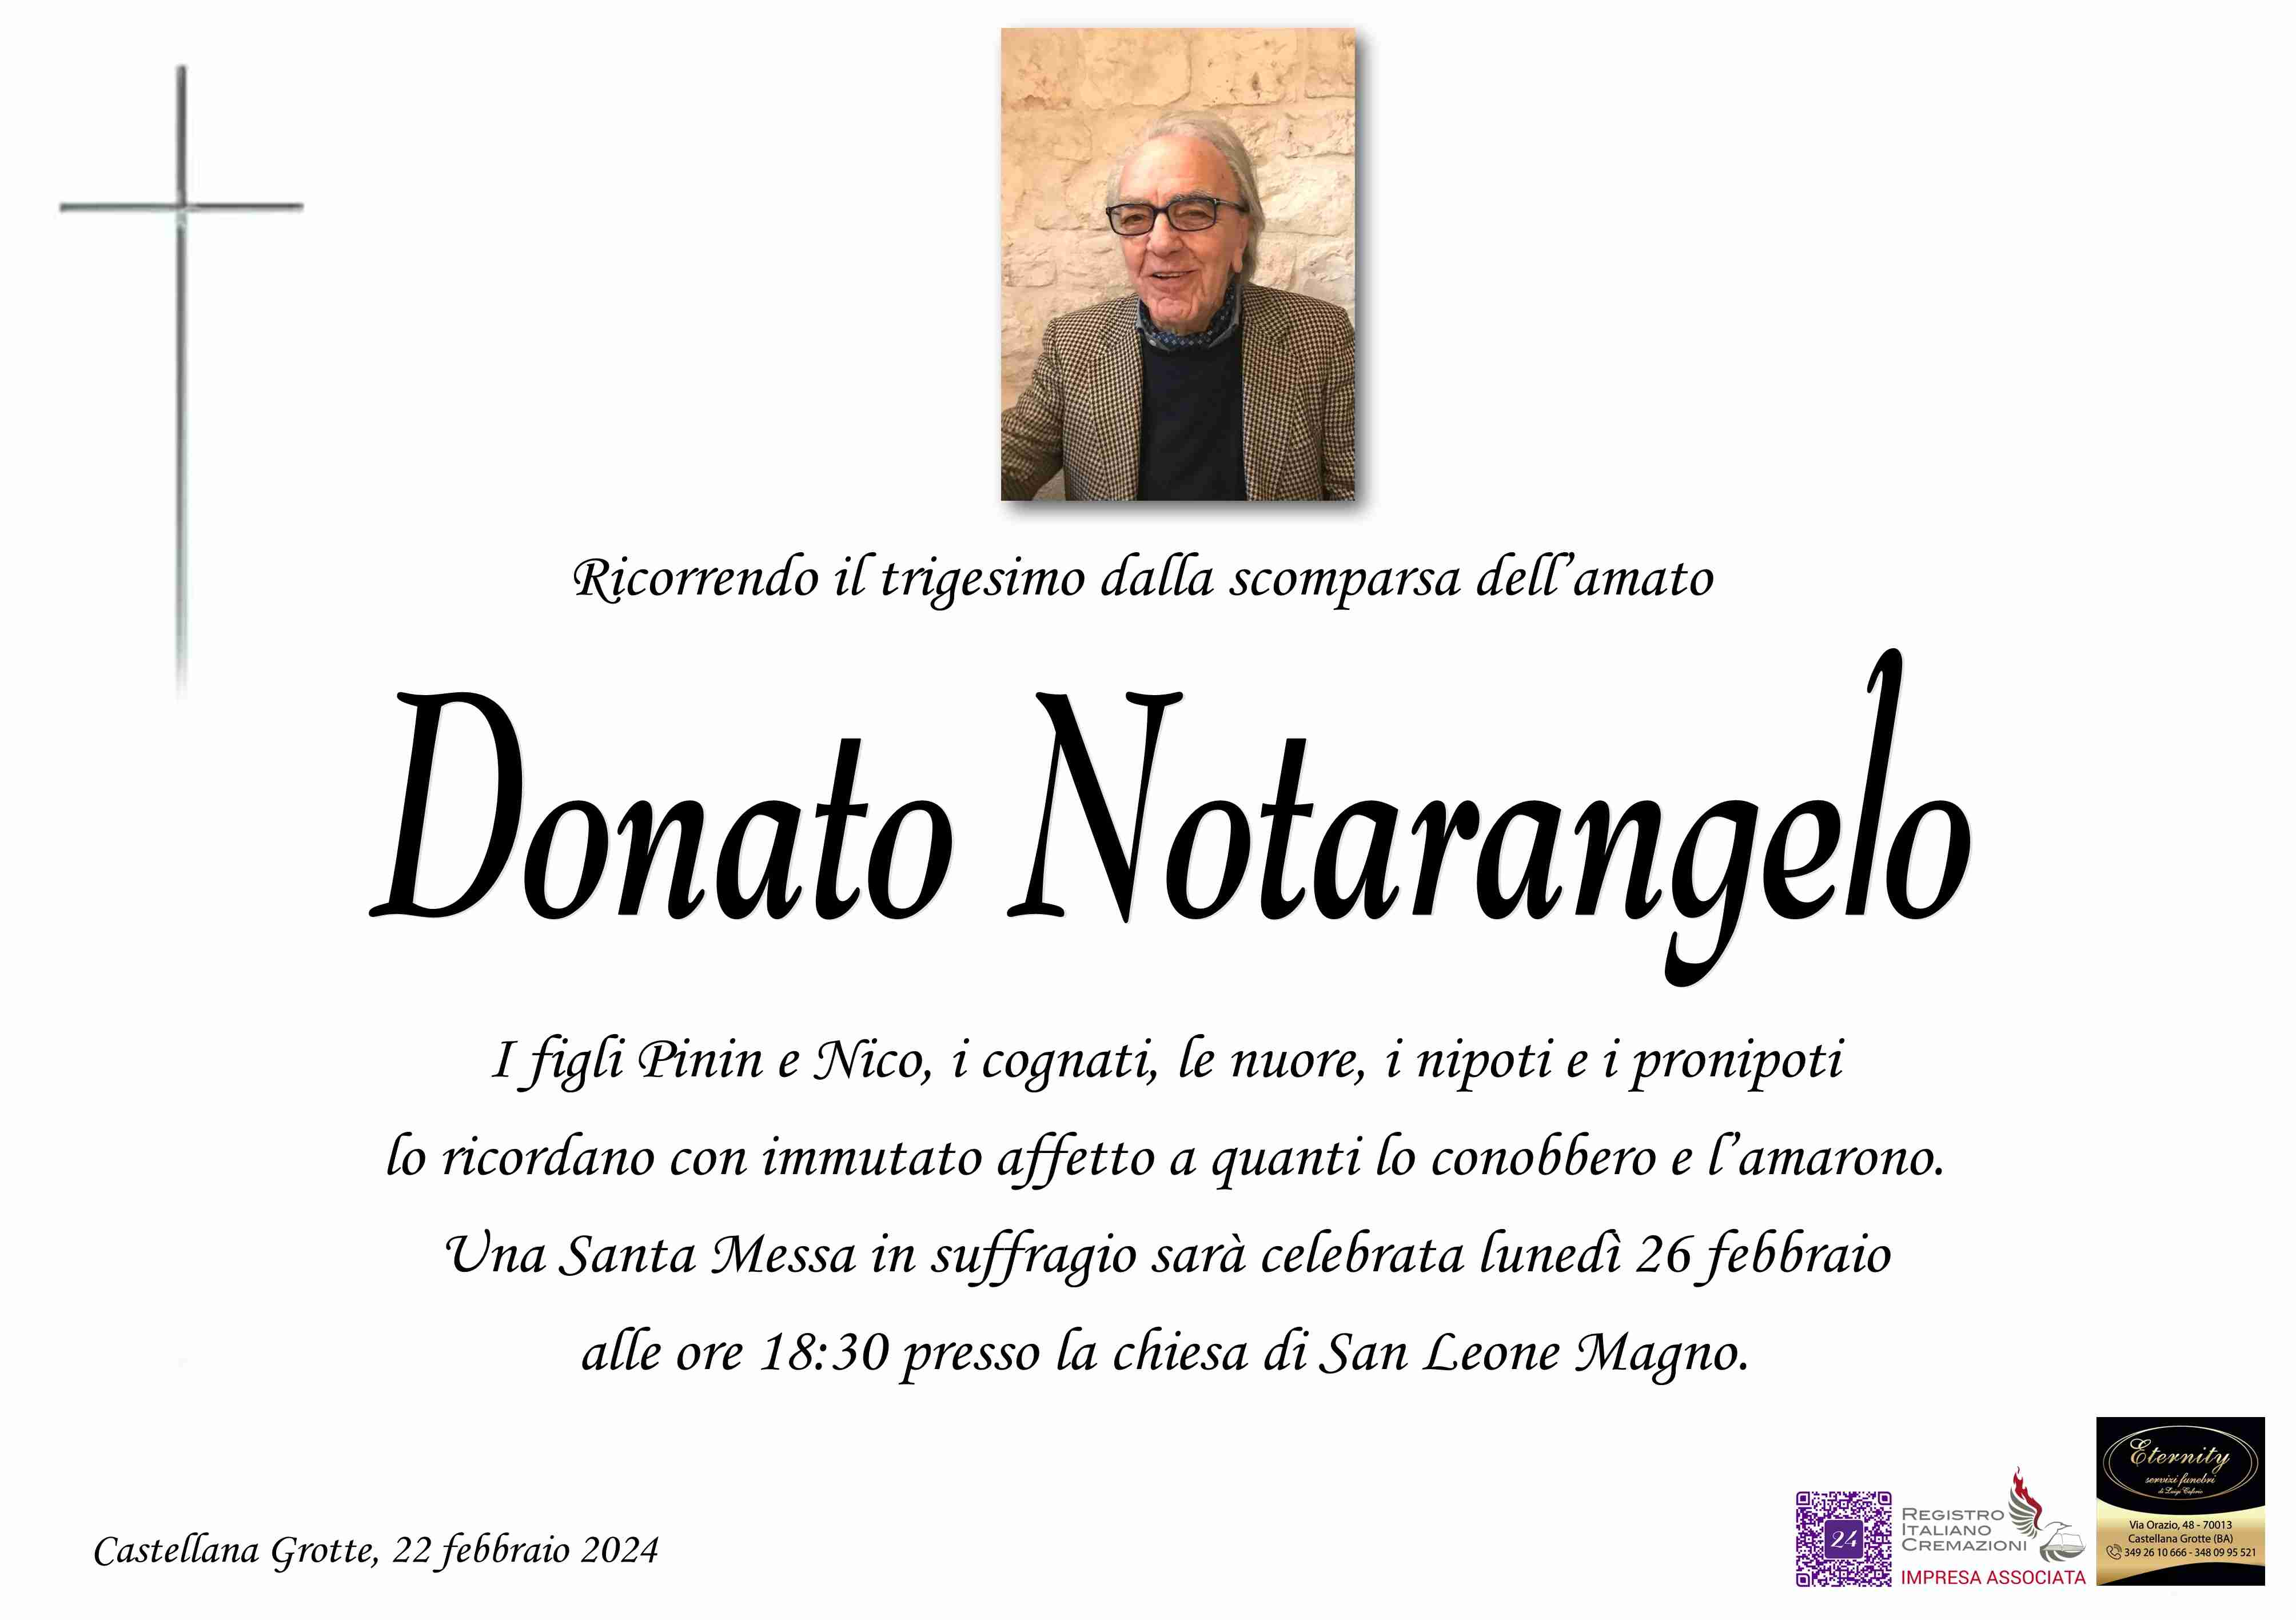 Donato Notarangelo